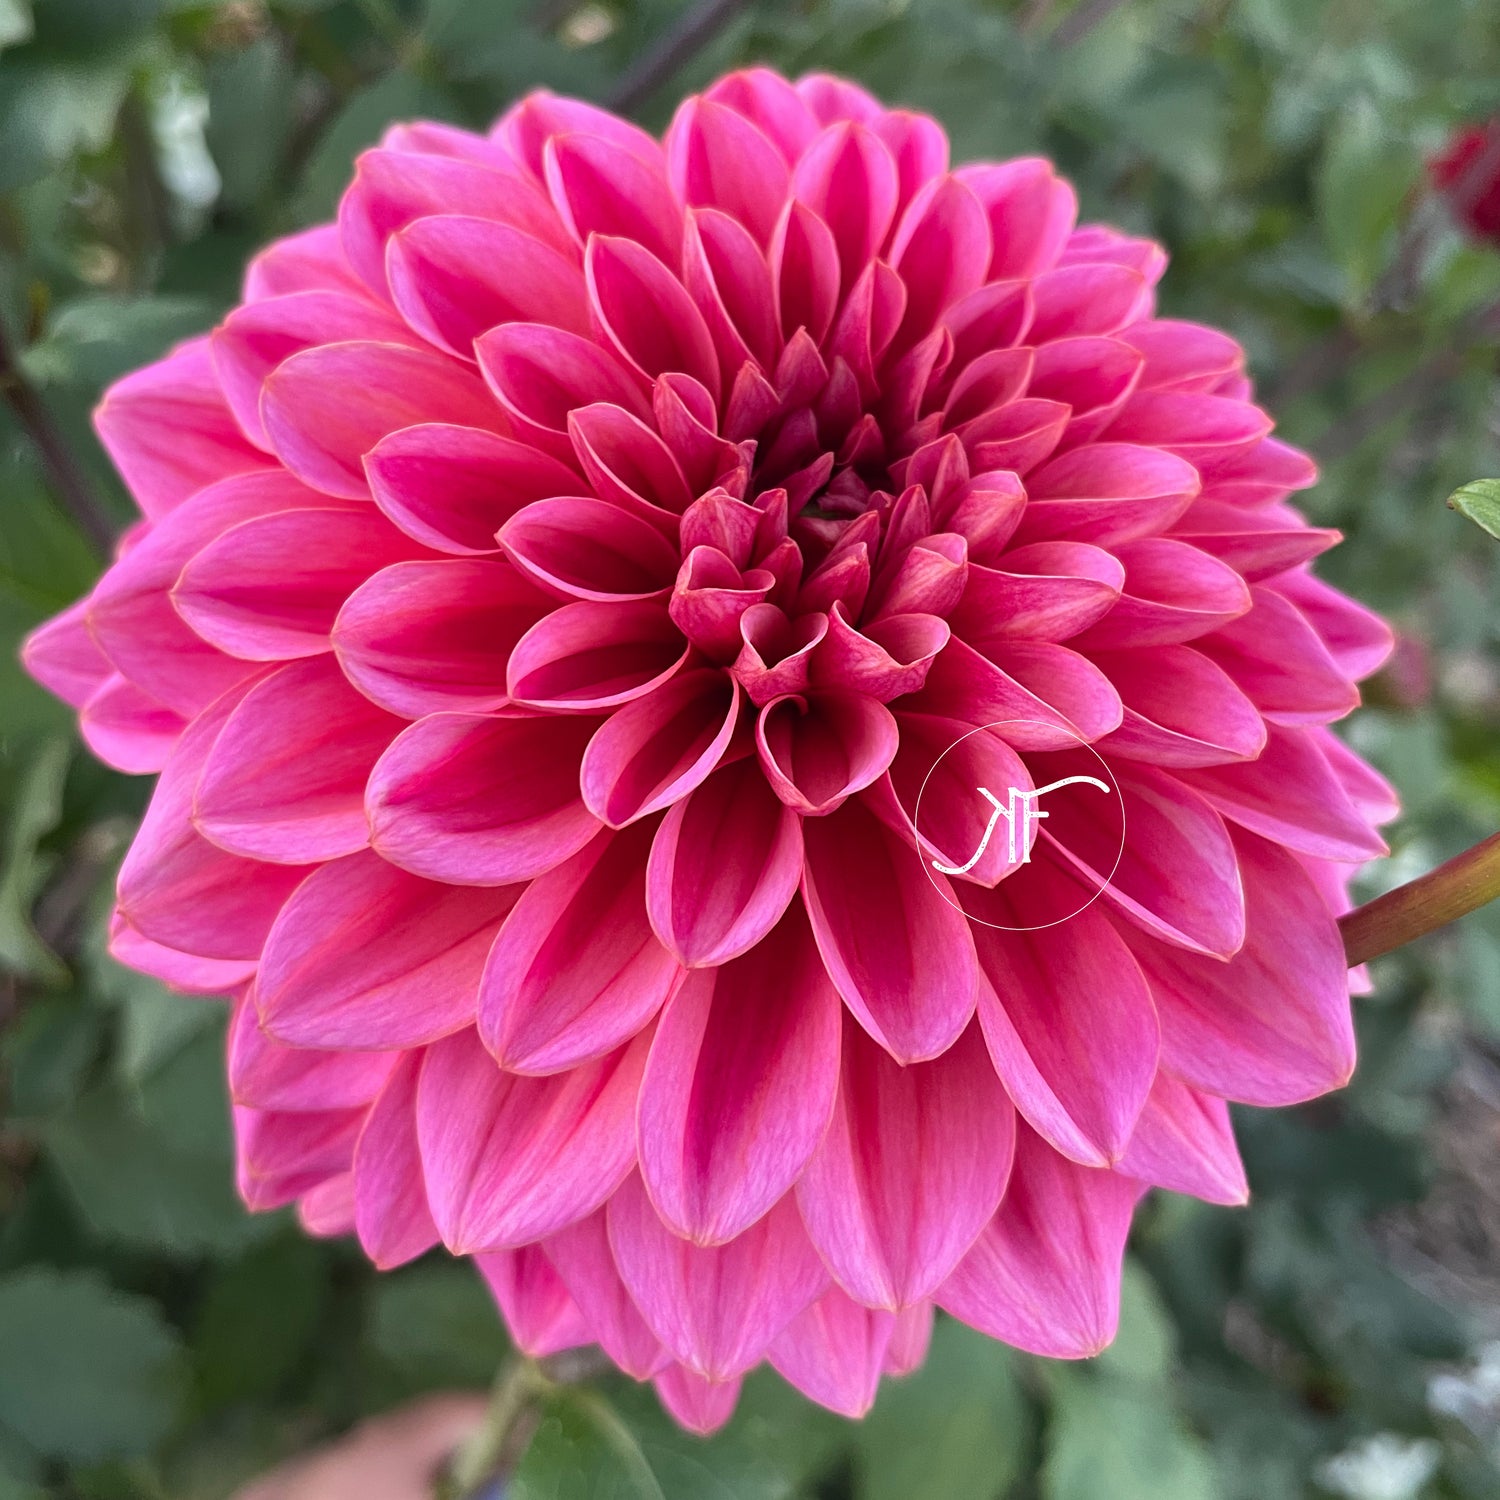 A closeup of a bright pink dahlia flower